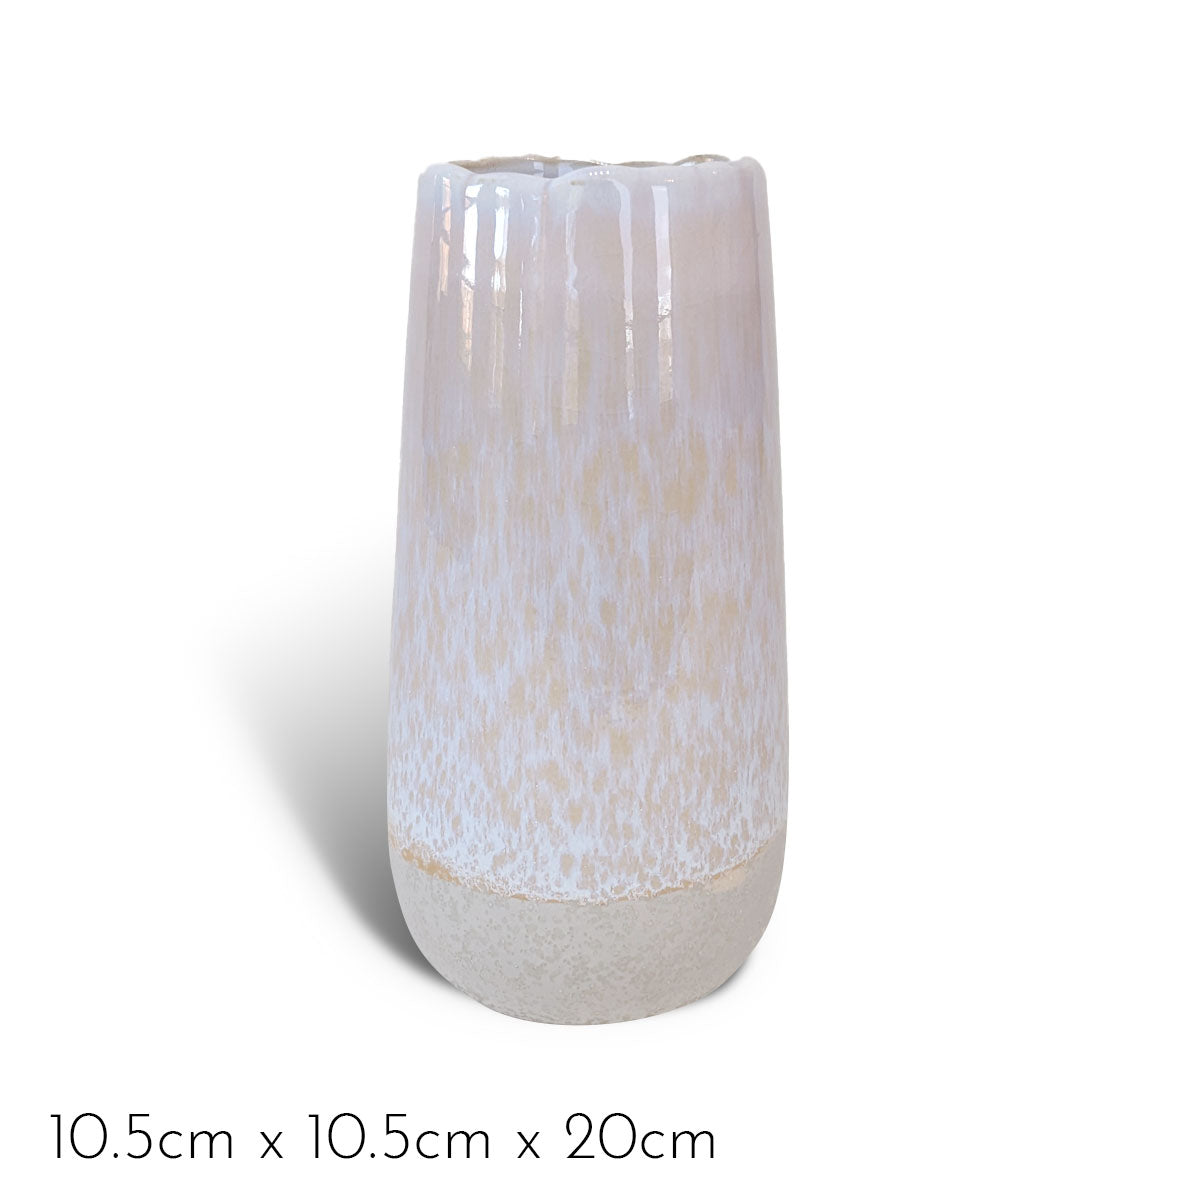 Glazed Vases DB Studio